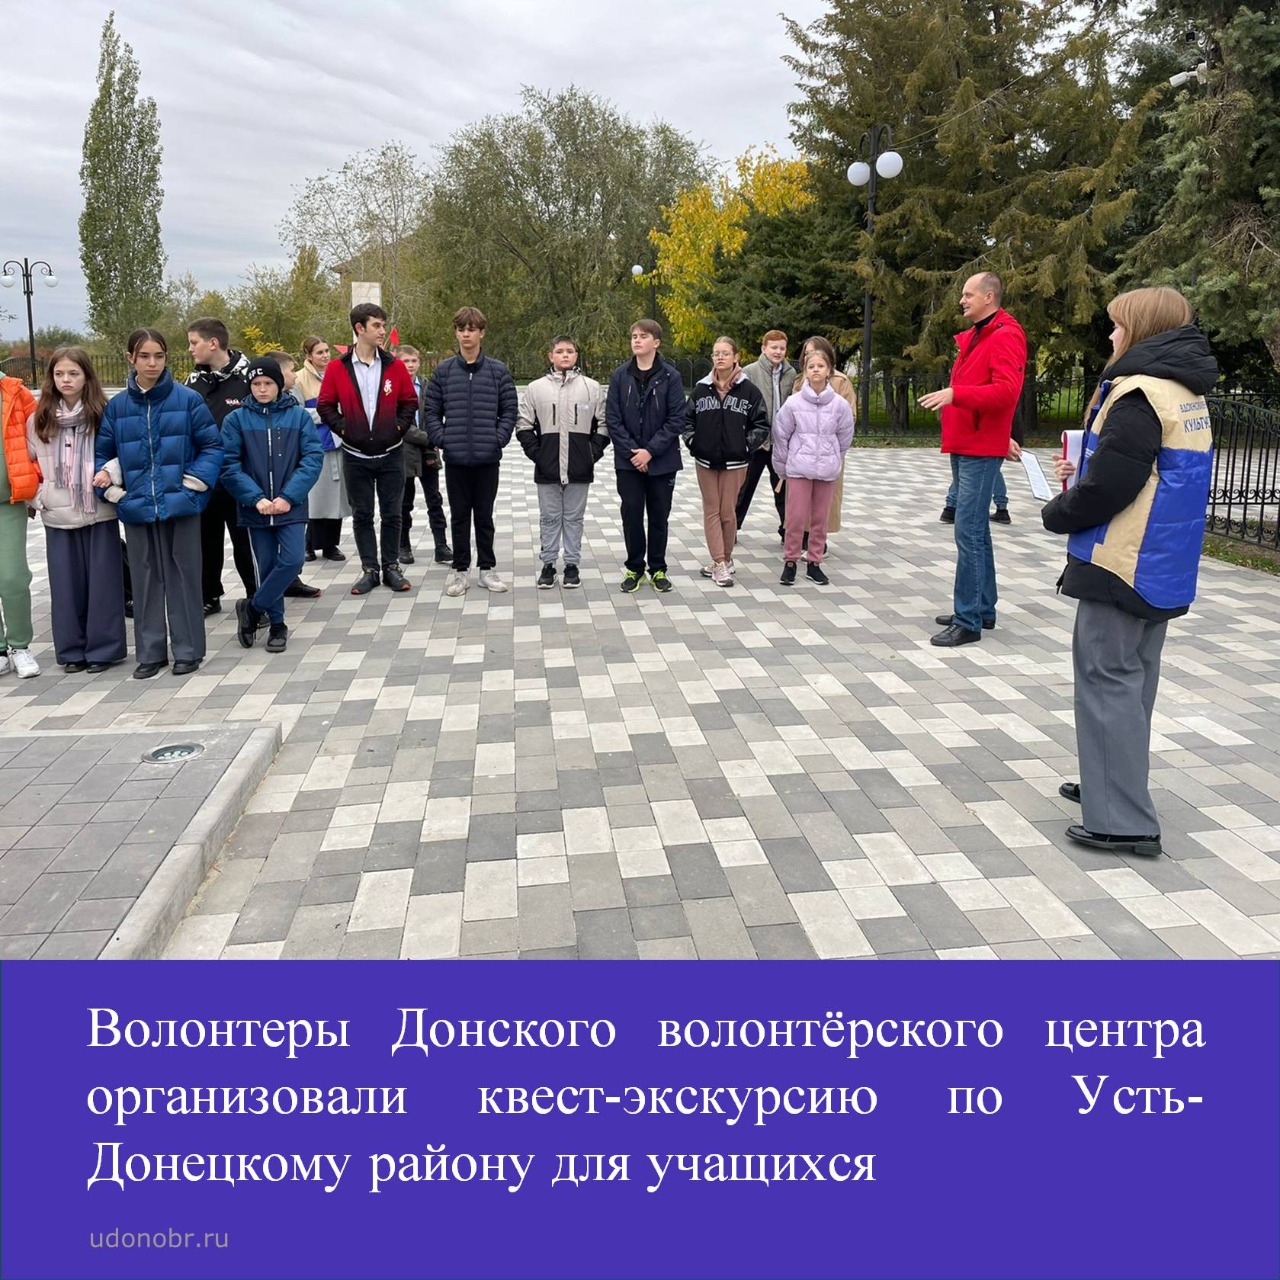 Волонтеры Донского волонтёрского центра организовали квест-экскурсию по Усть-Донецкому району для учащихся общеобразовательных школ